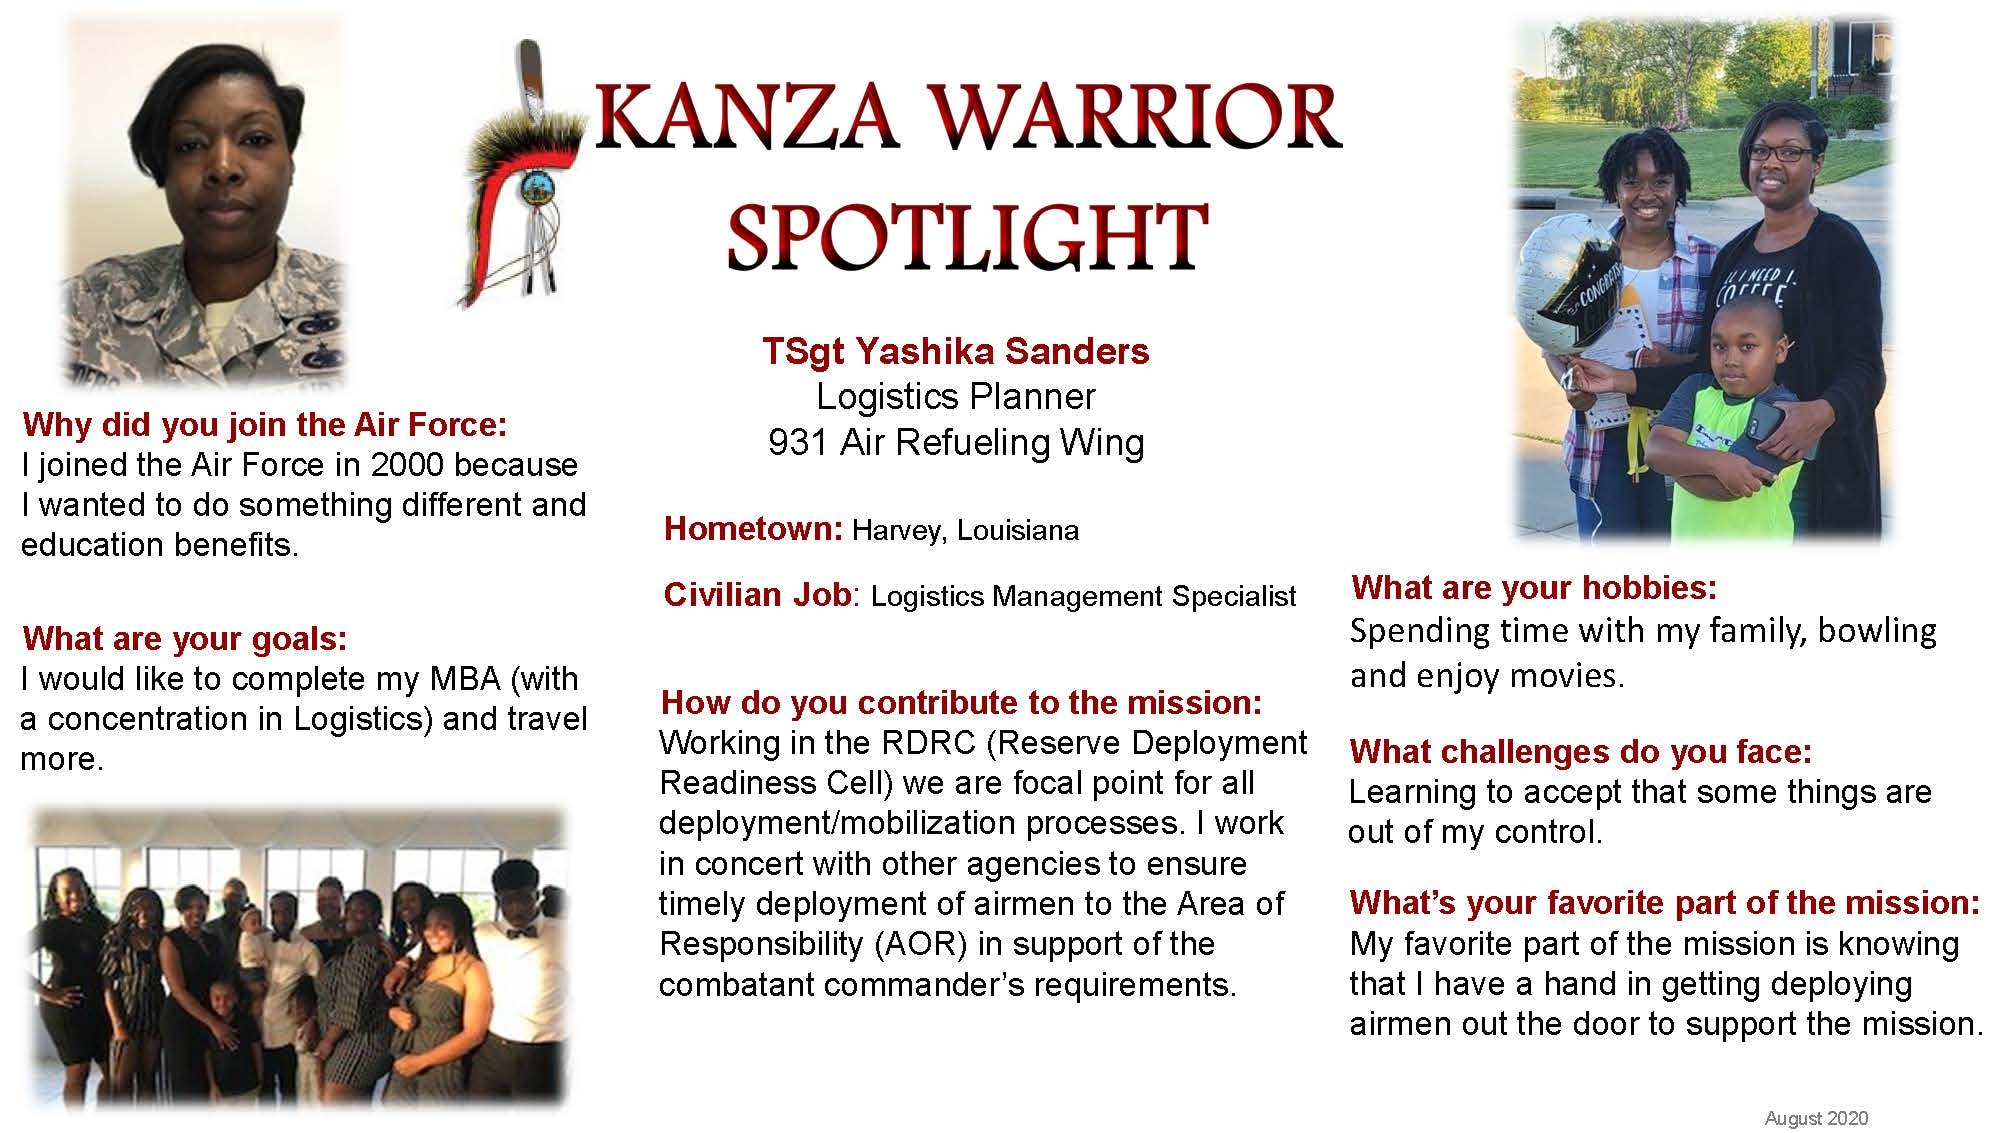 August KANZA Warrior Spotlight